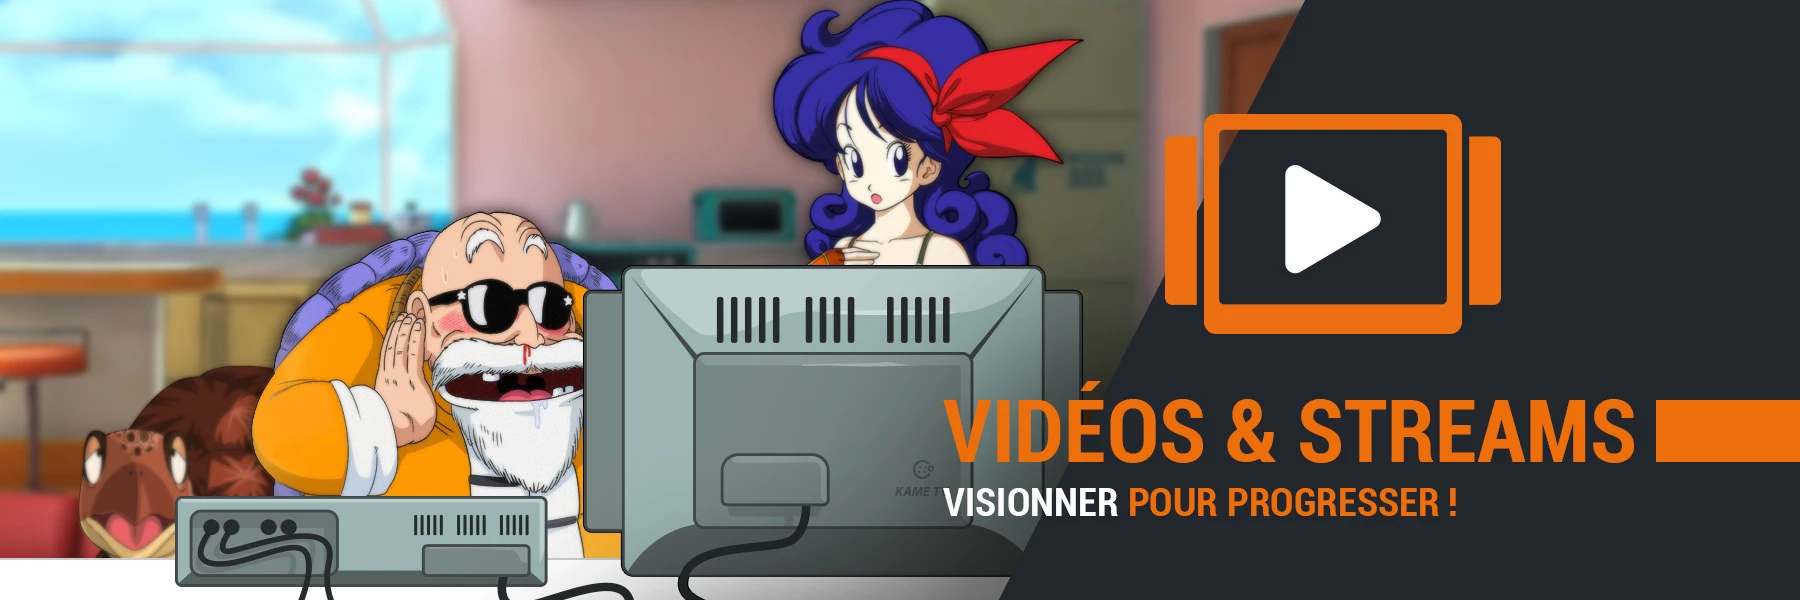 Vidéos et Streams sur DBSCards.fr : Visionner pour progresser !